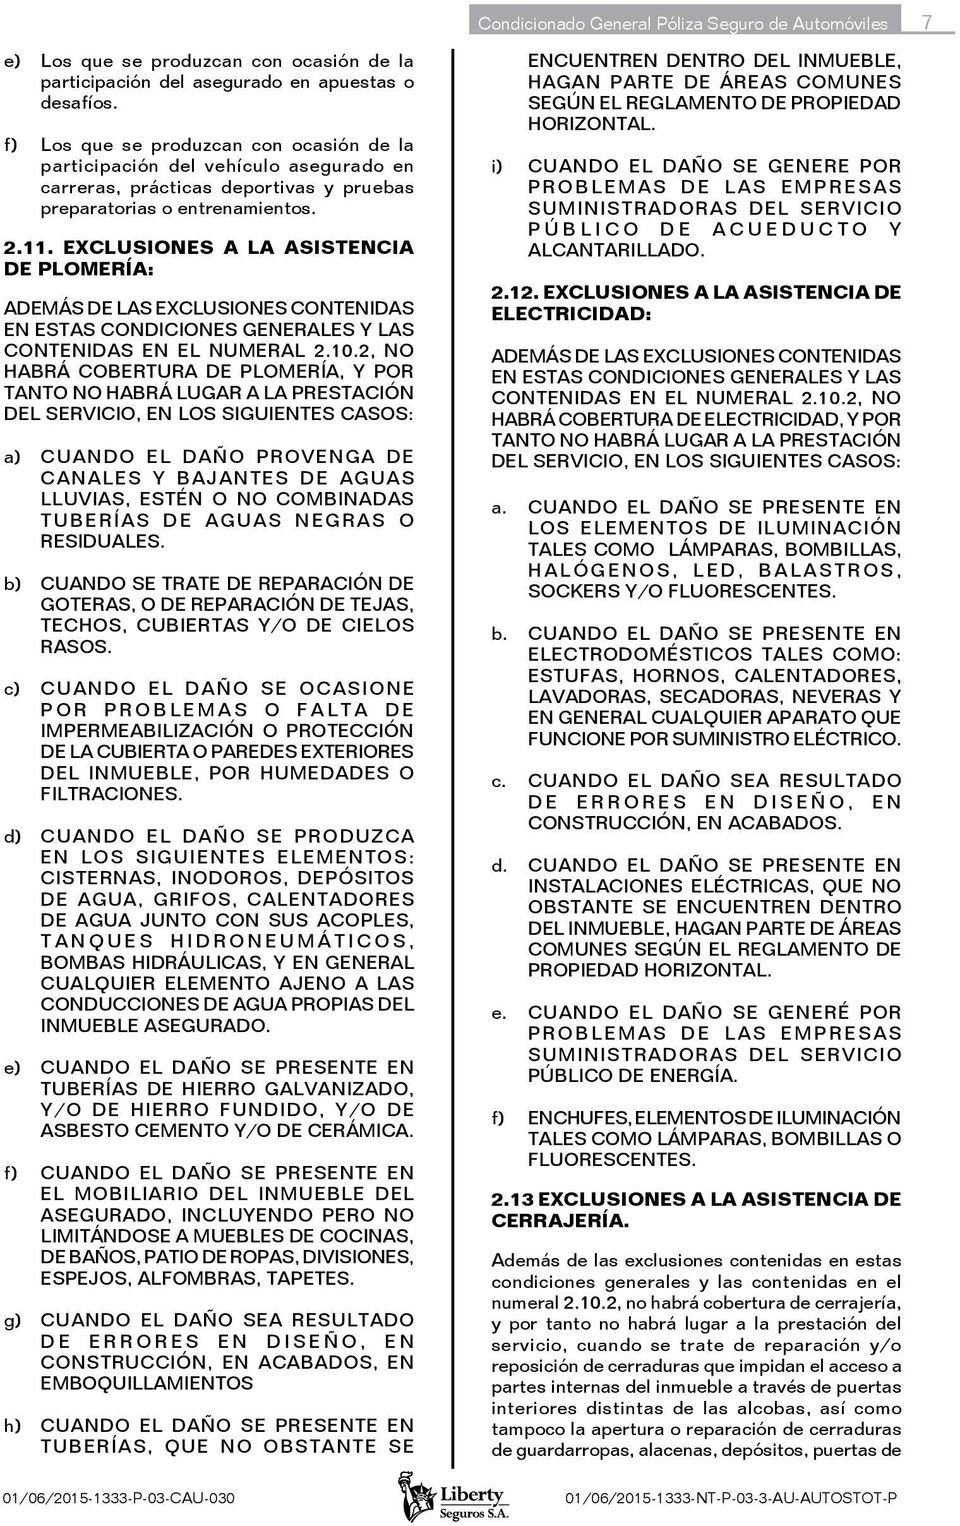 EXCLUSIONES A LA ASISTENCIA DE PLOMERÍA: ADEMÁS DE LAS EXCLUSIONES CONTENIDAS EN ESTAS CONDICIONES GENERALES Y LAS CONTENIDAS EN EL NUMERAL 2.10.